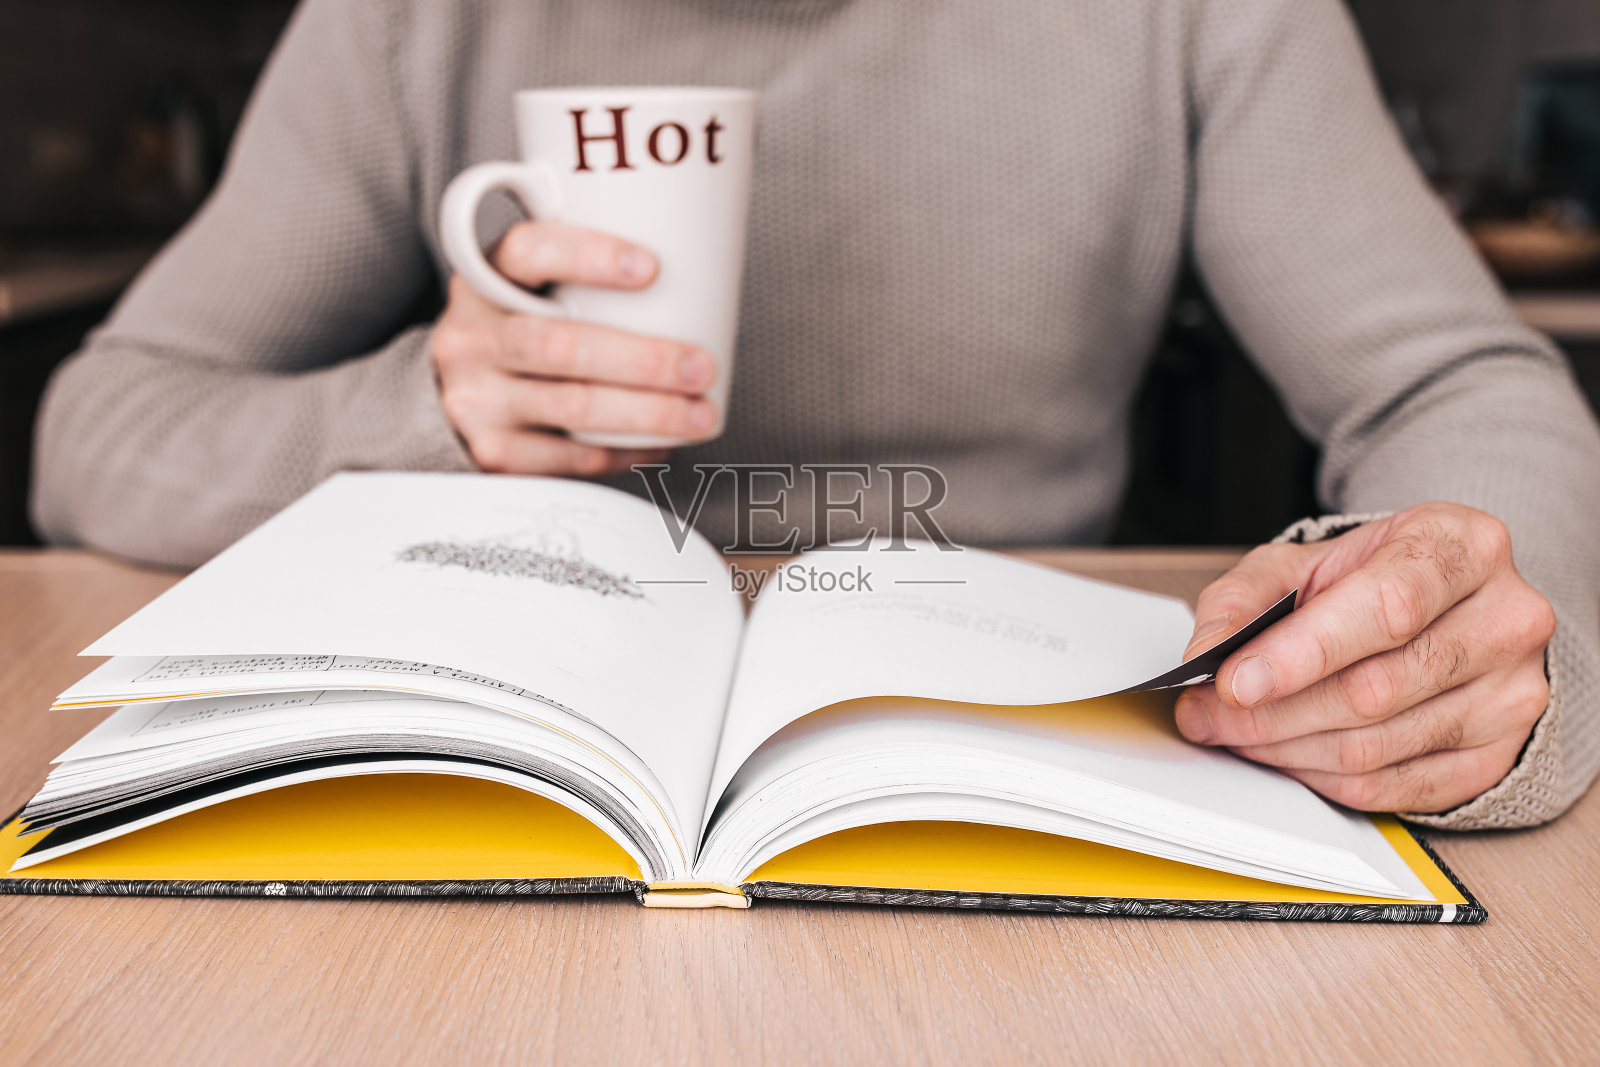 一个人在图书馆的桌子旁看书，手里拿着一个杯子照片摄影图片